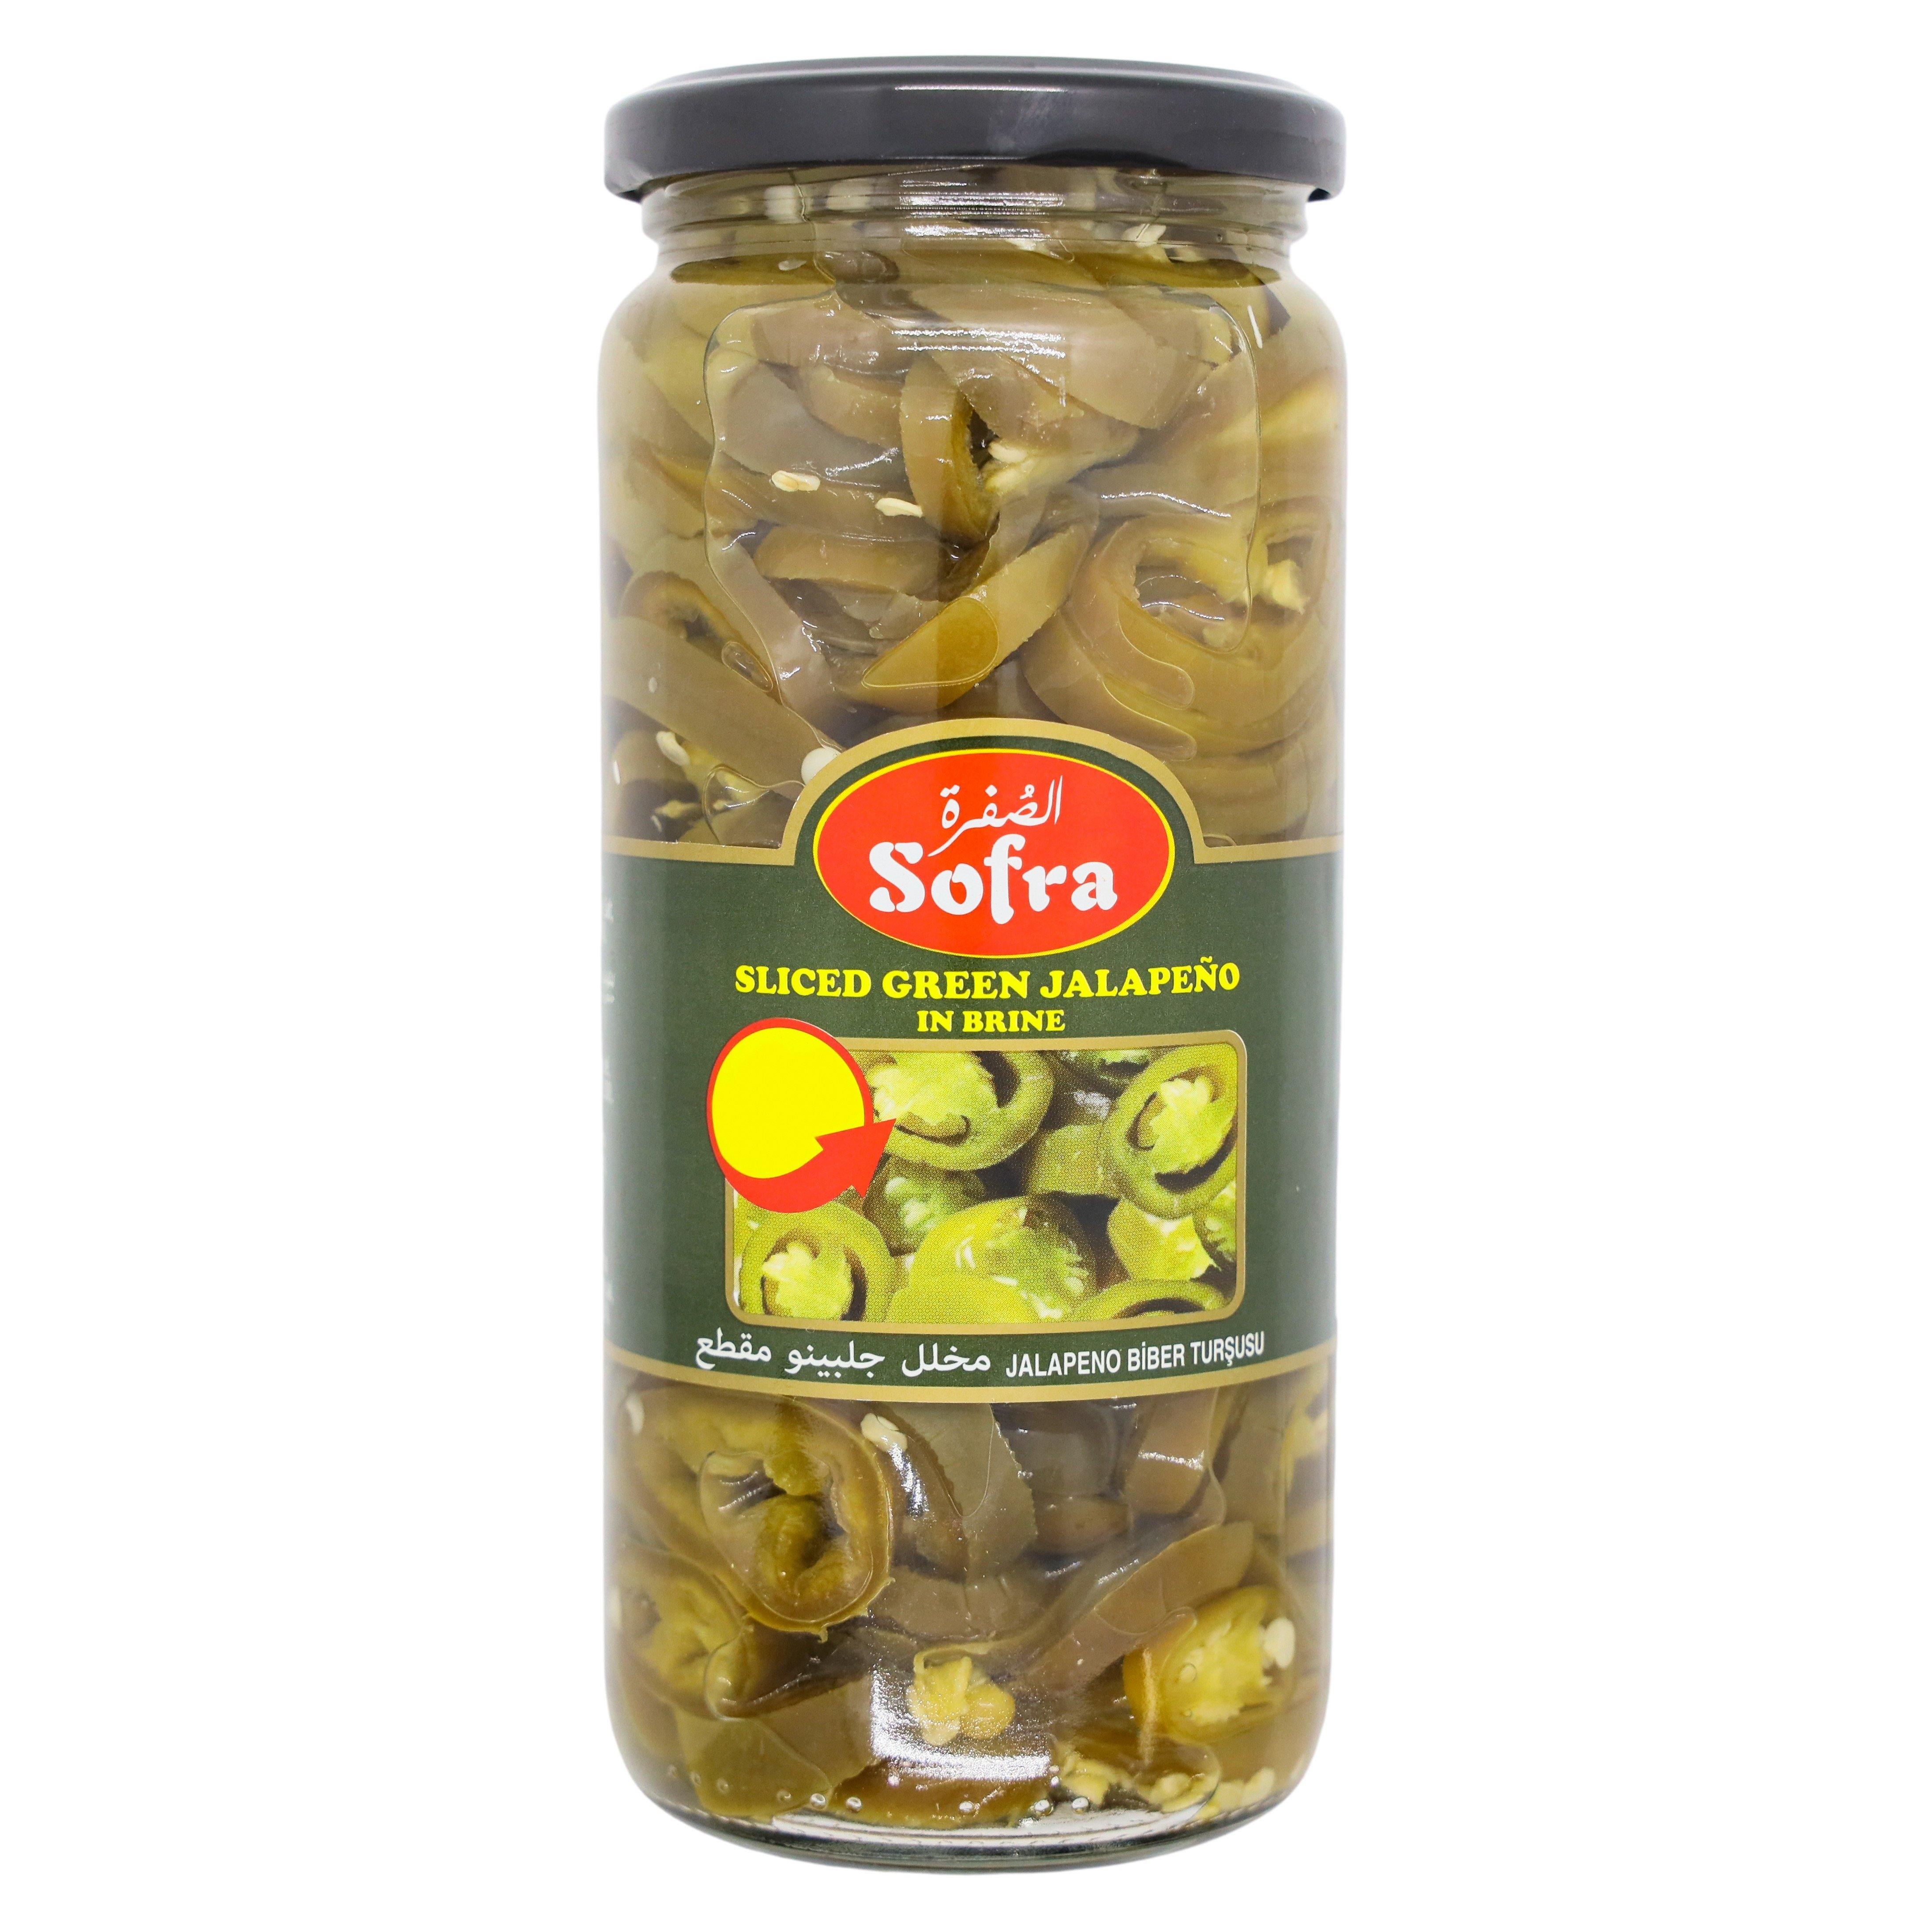 Sofra sliced green jalapenos in brine SaveCo Online Ltd